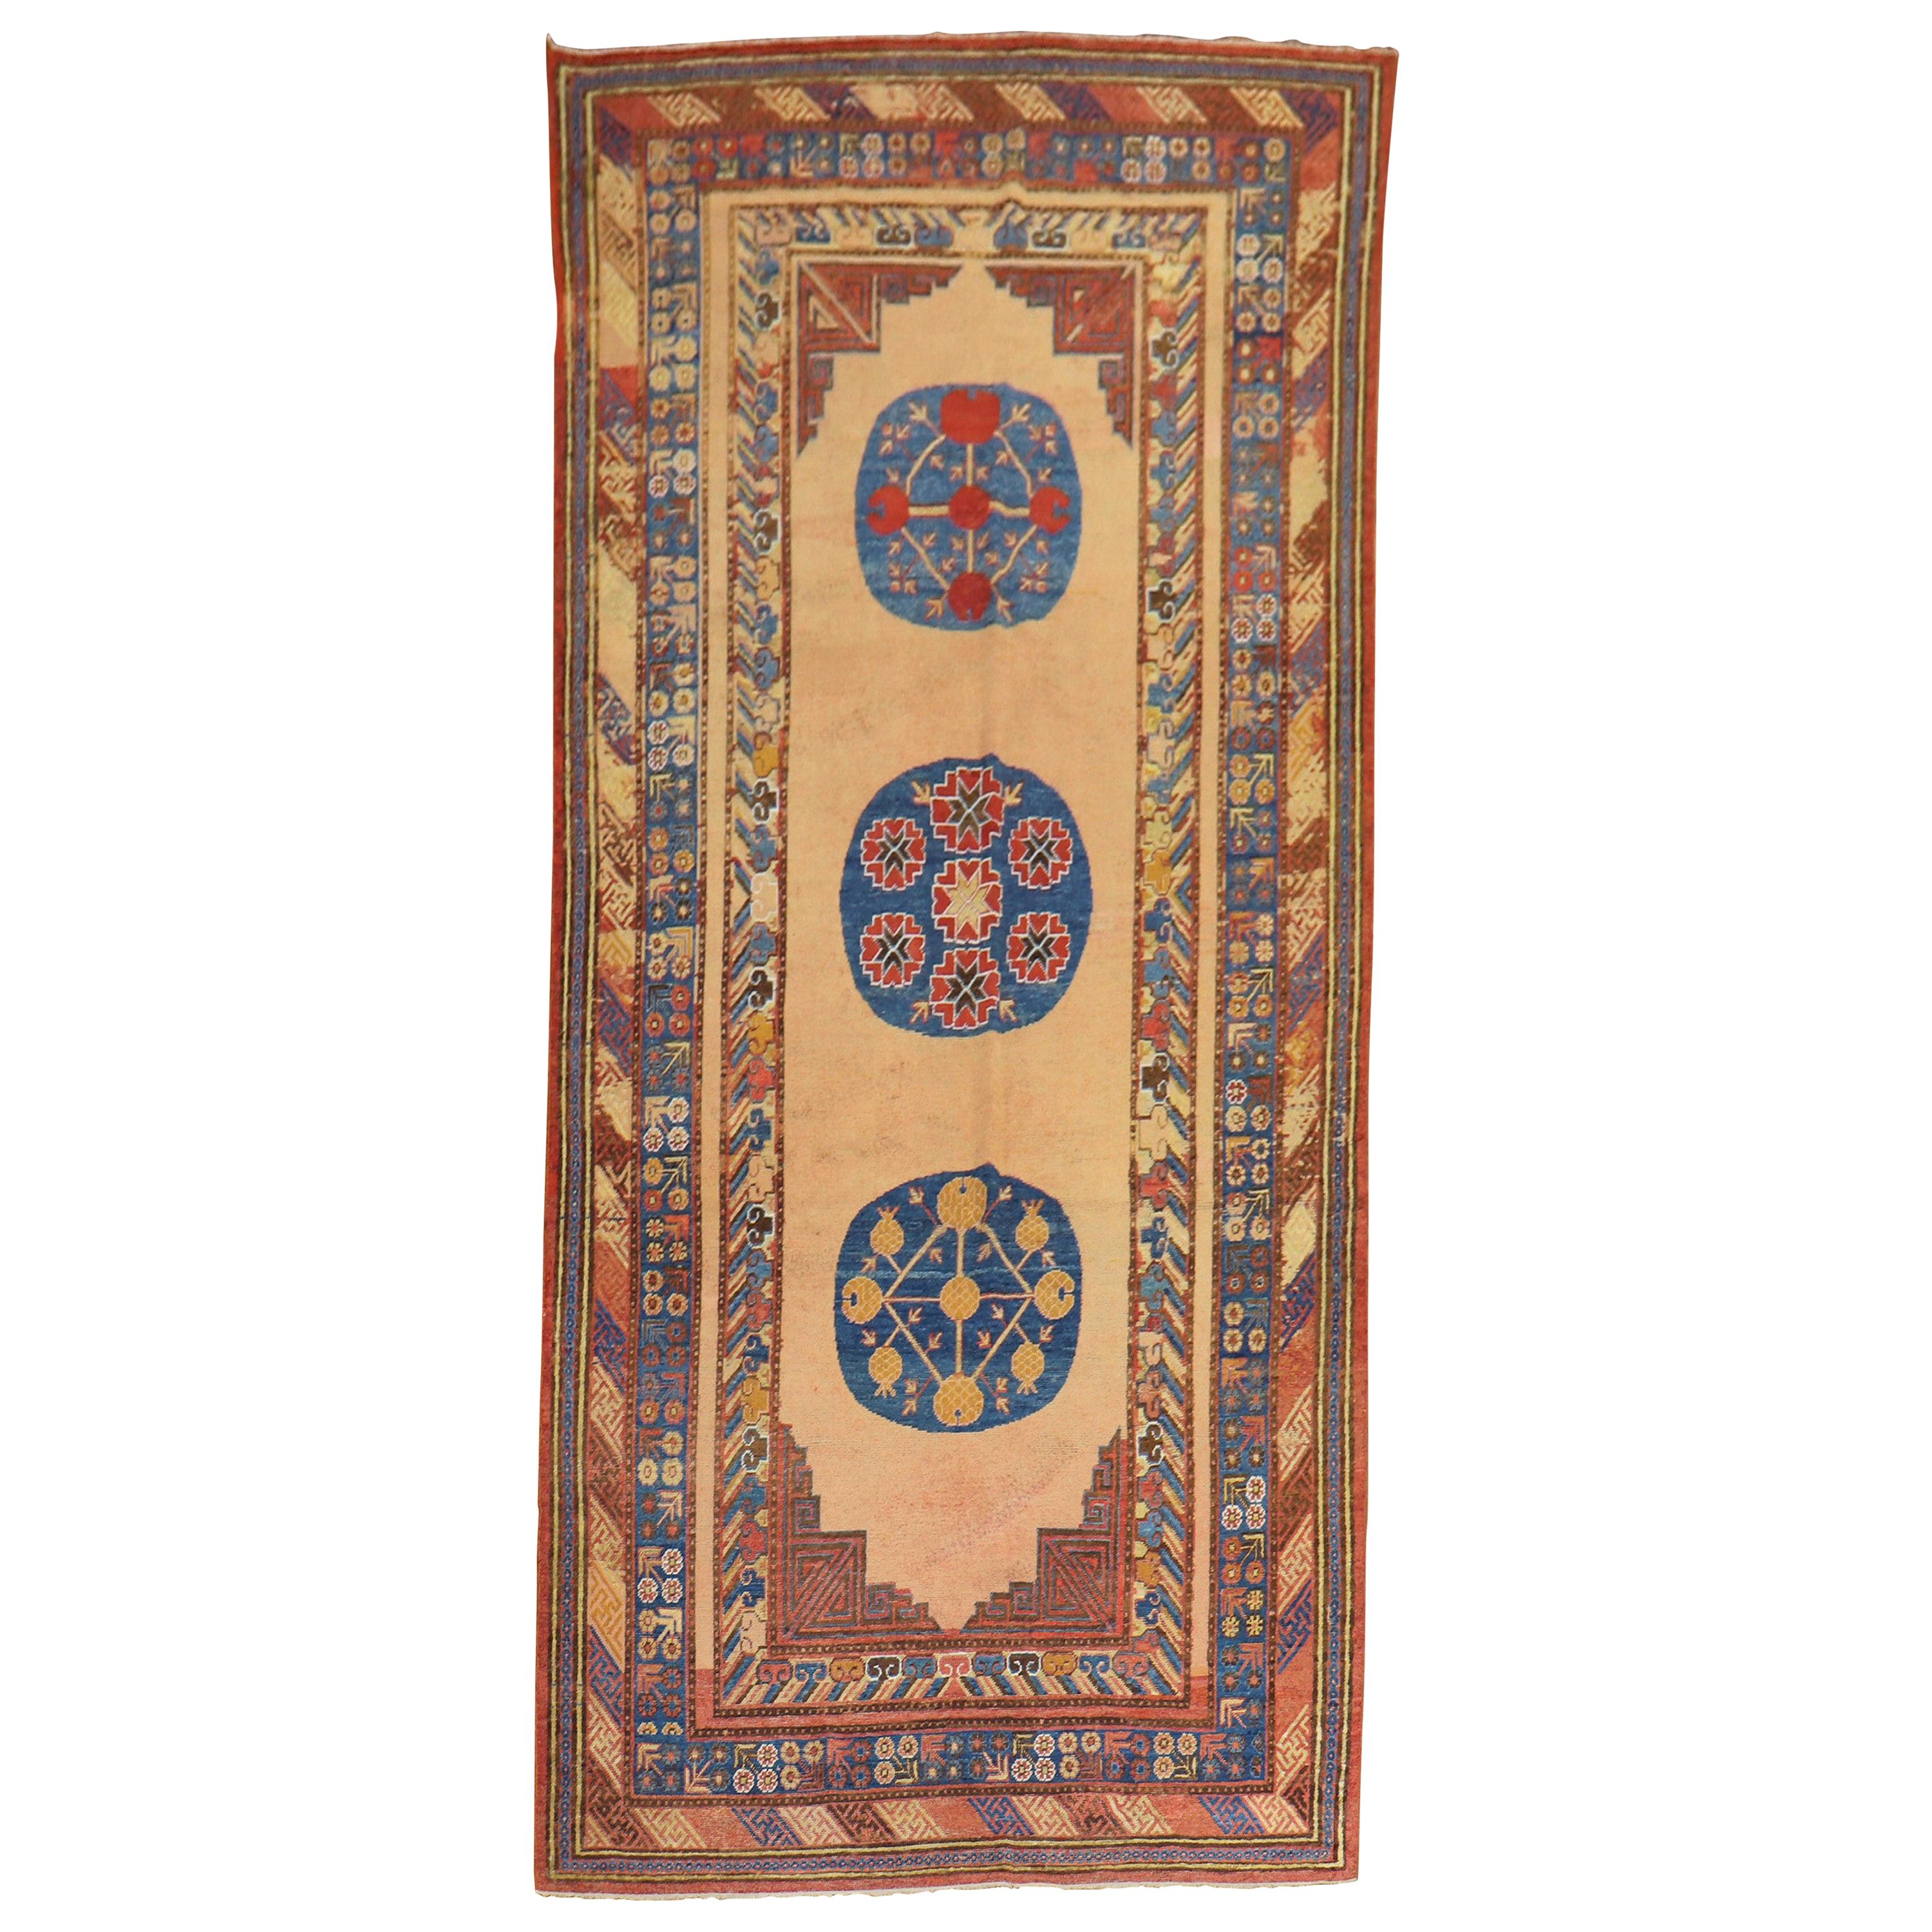 Magnifique tapis Khotan ancien du 19ème siècle du Turkestan oriental